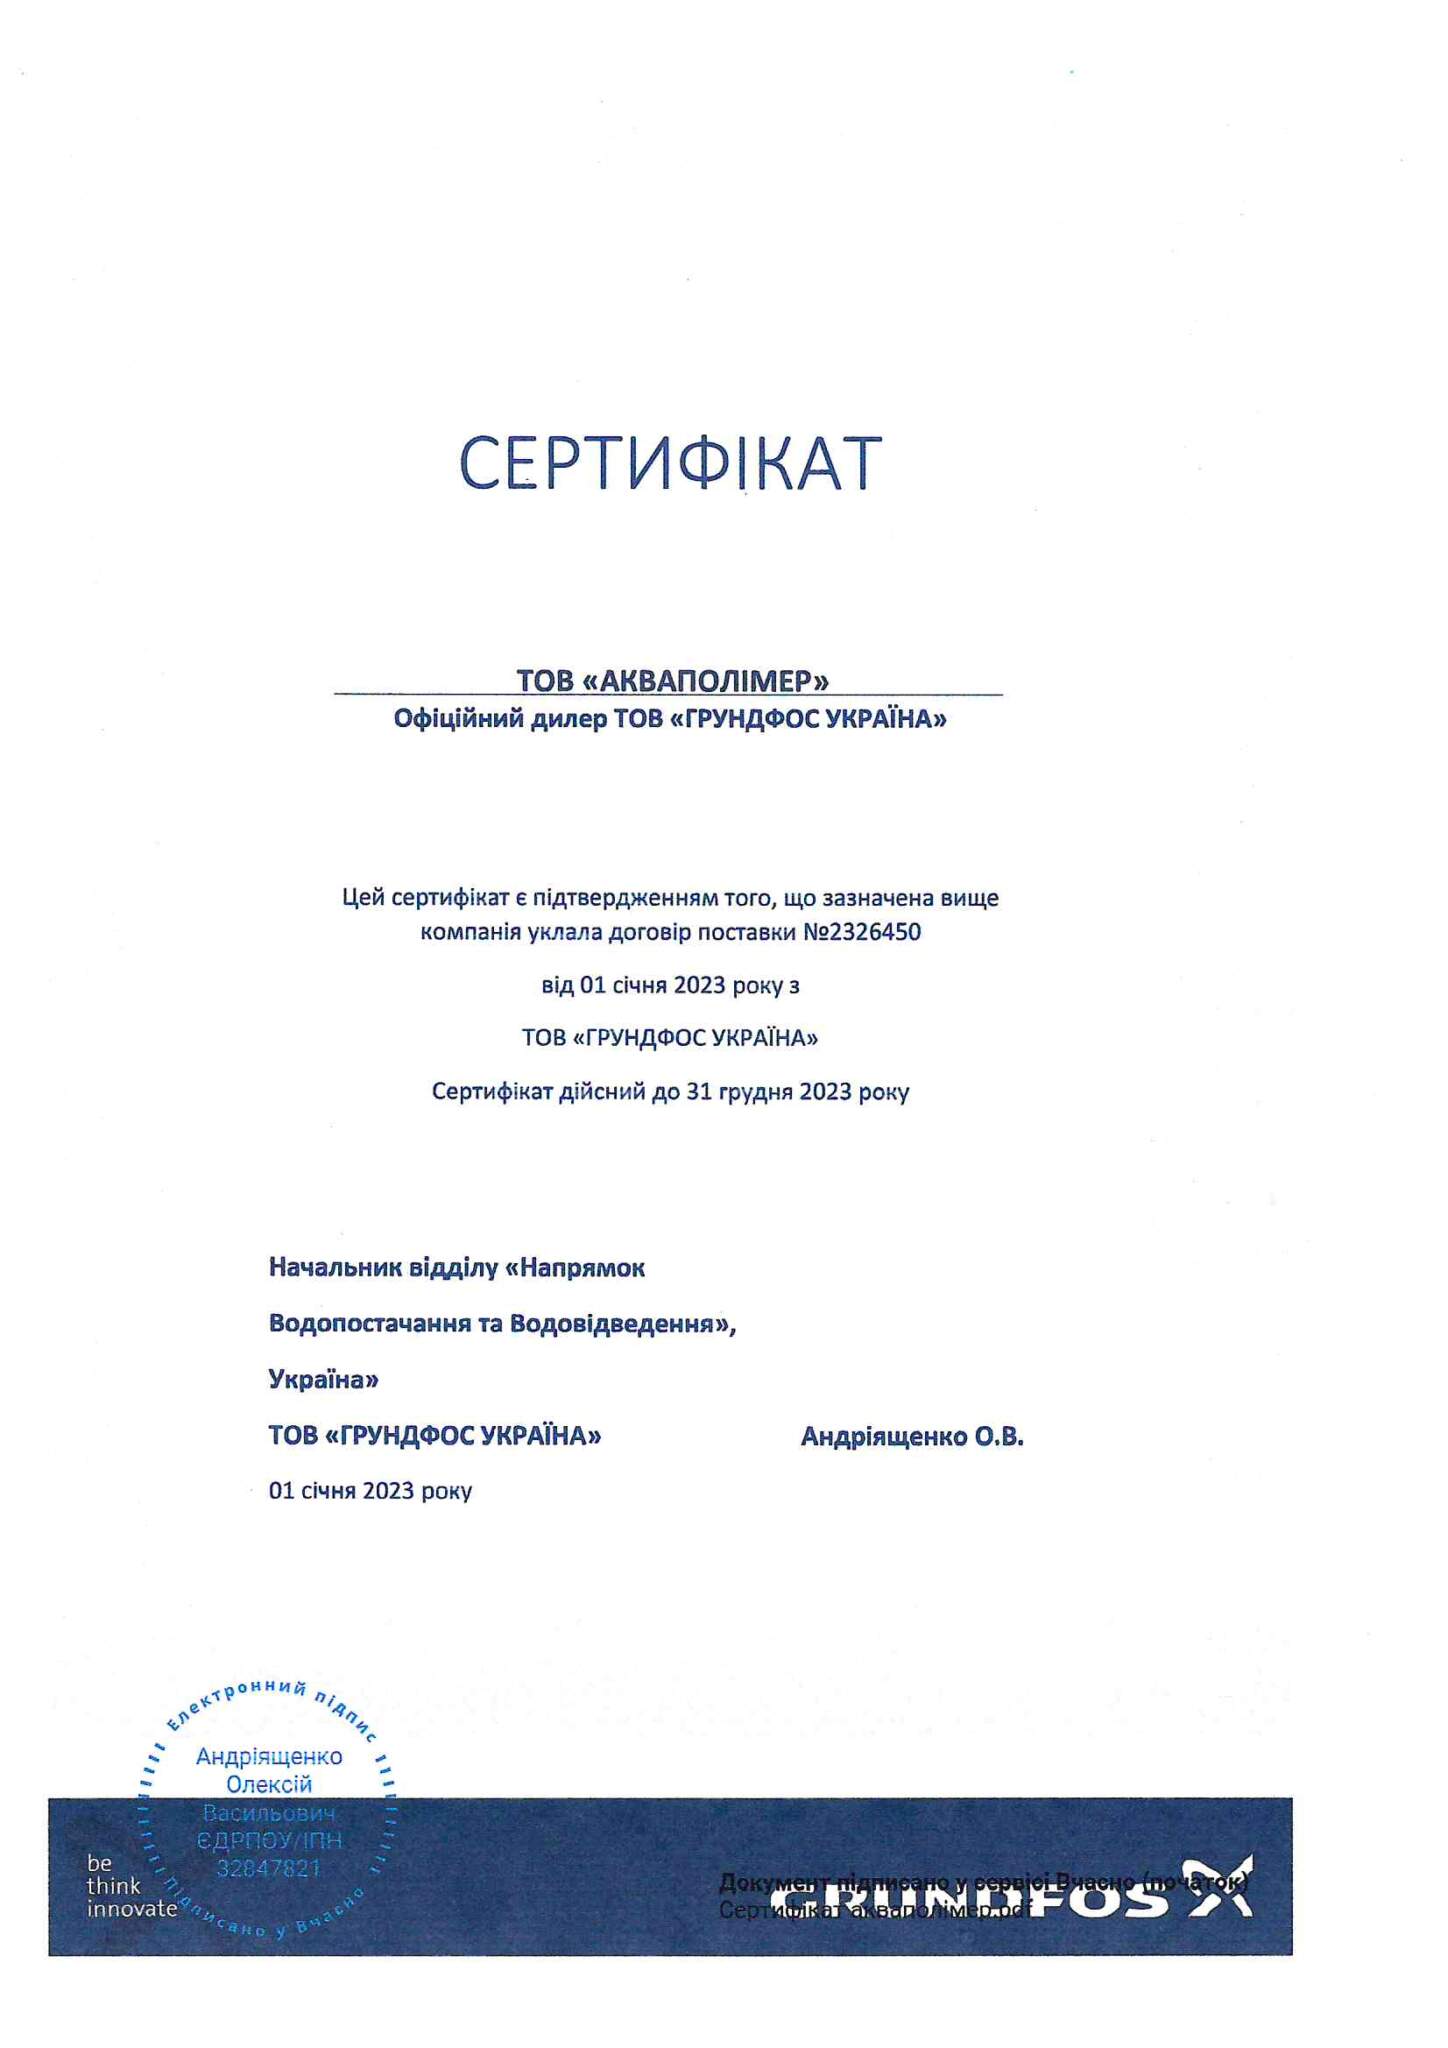 Сертификат официального представителя ООО "ГРУНДФОС УКРАИНА"